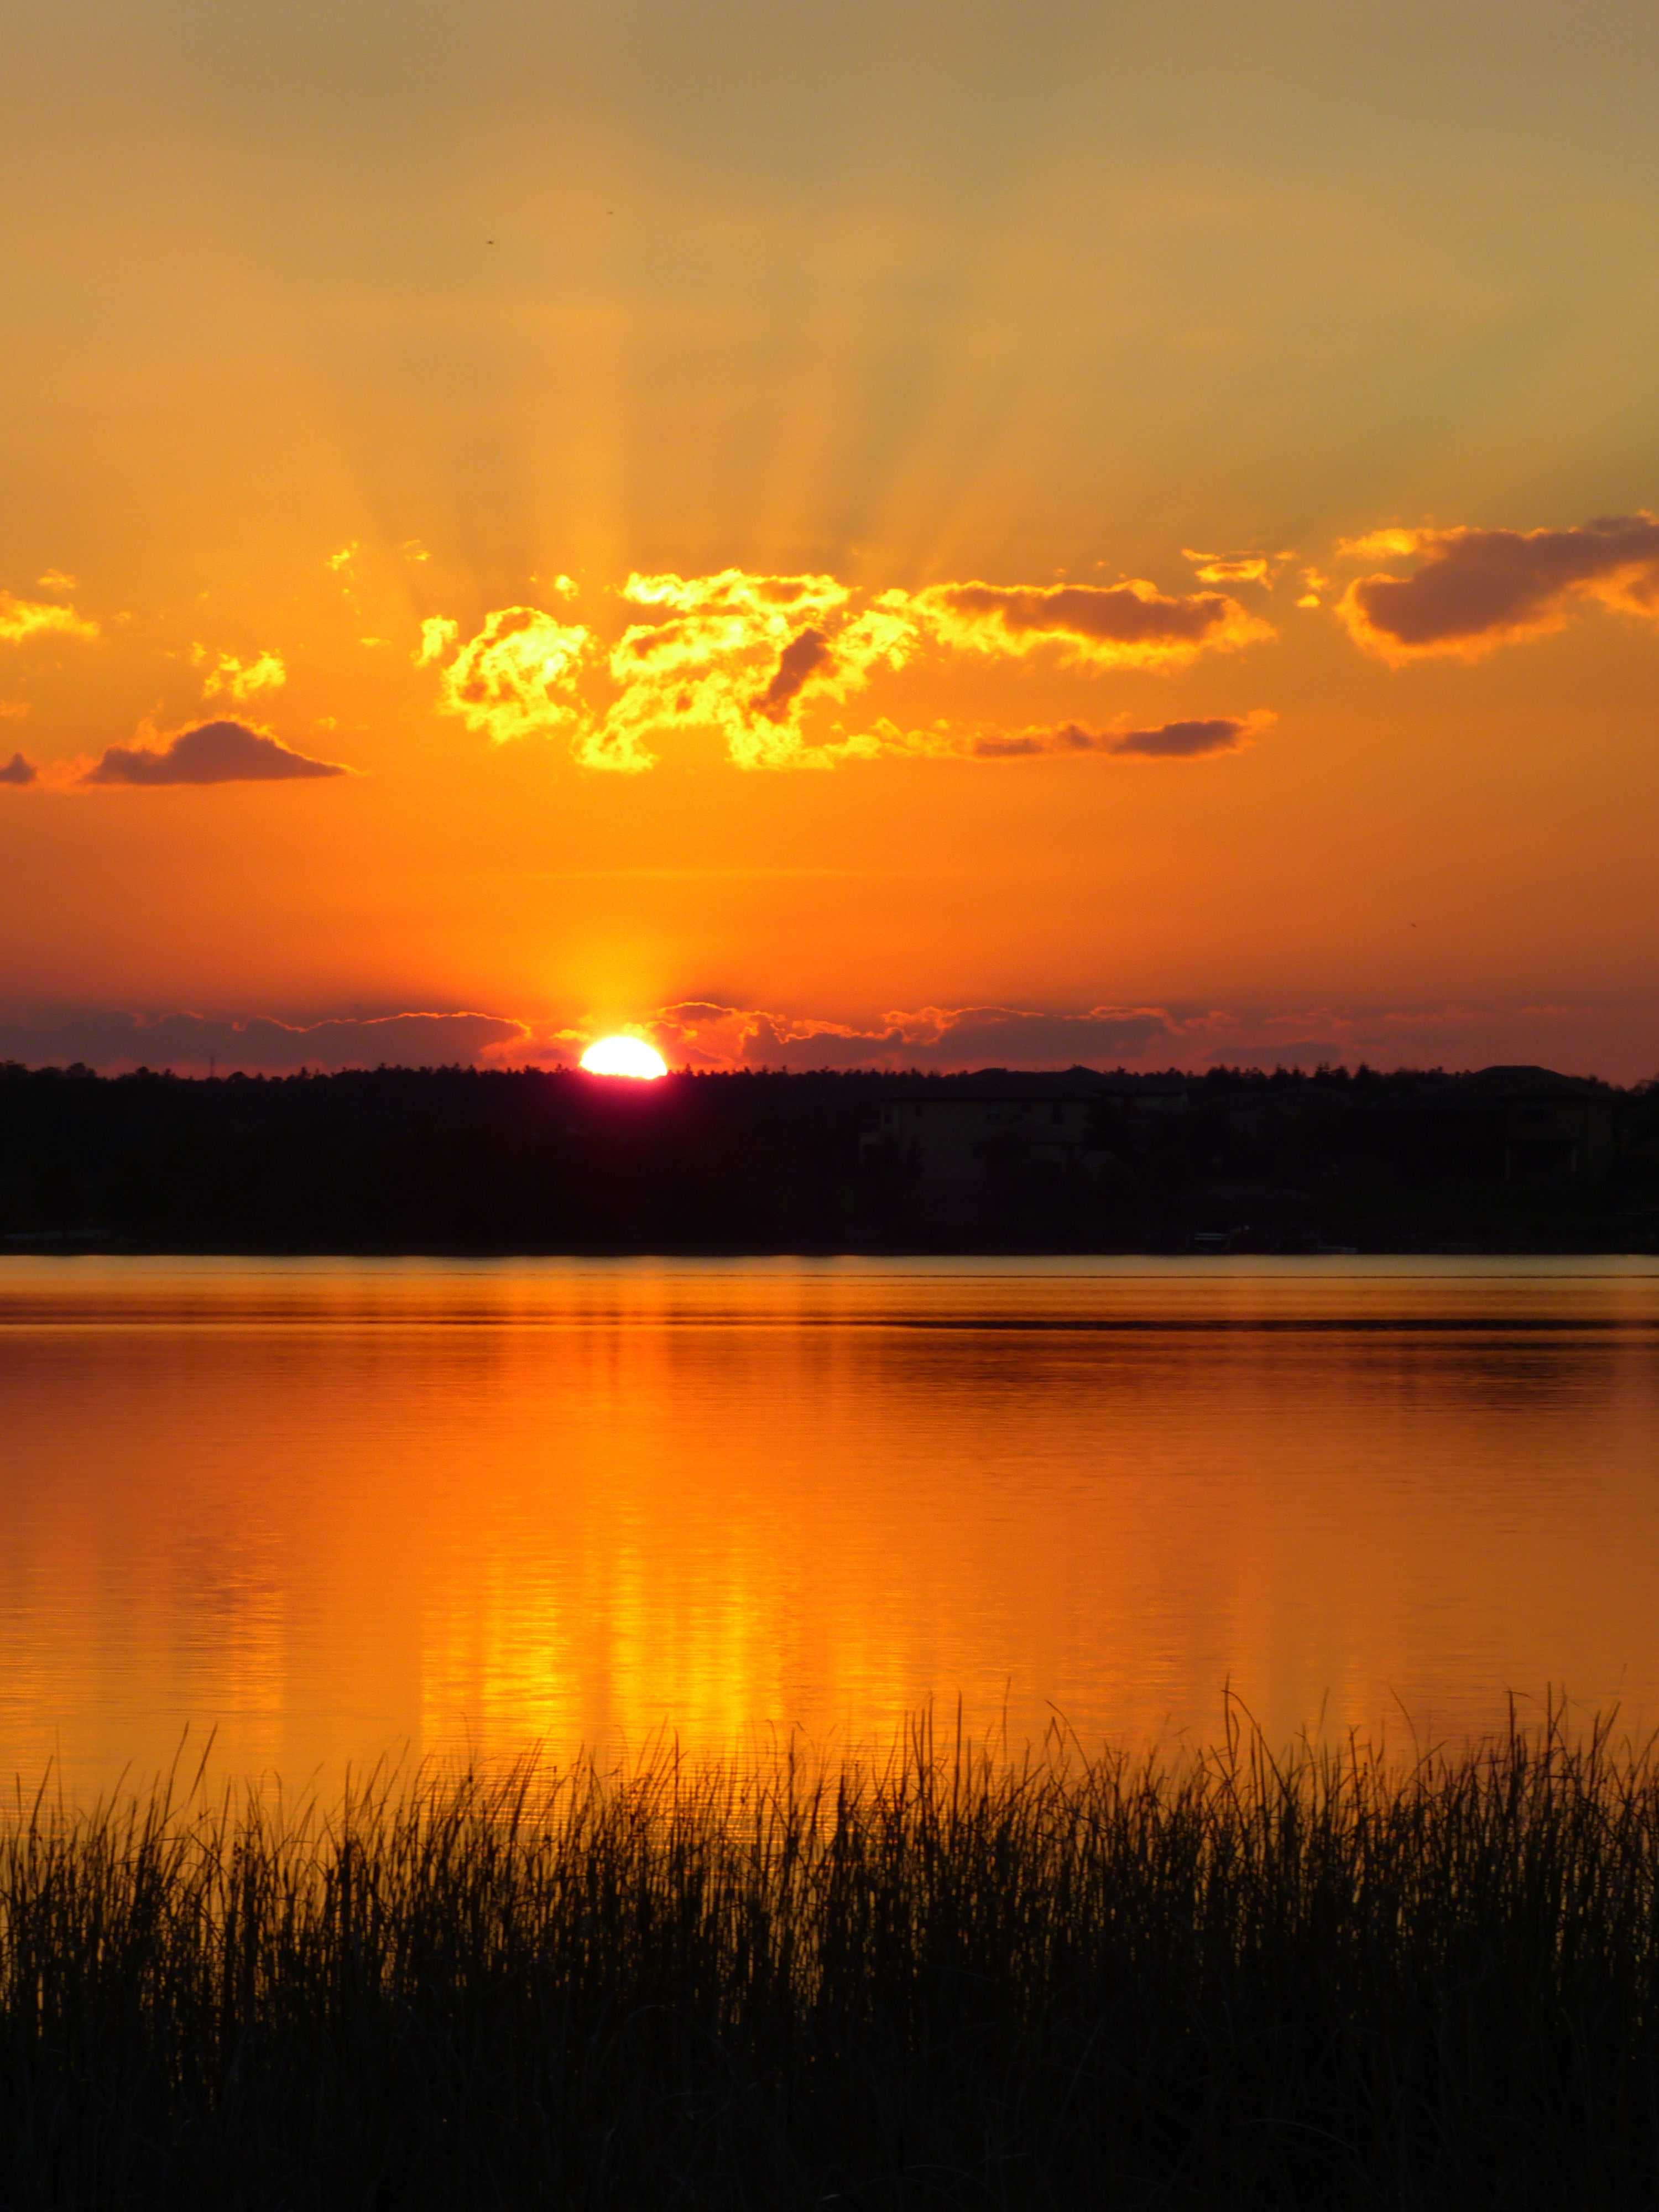  Sunset  -  Westgate Lake, Orlando, Florida 